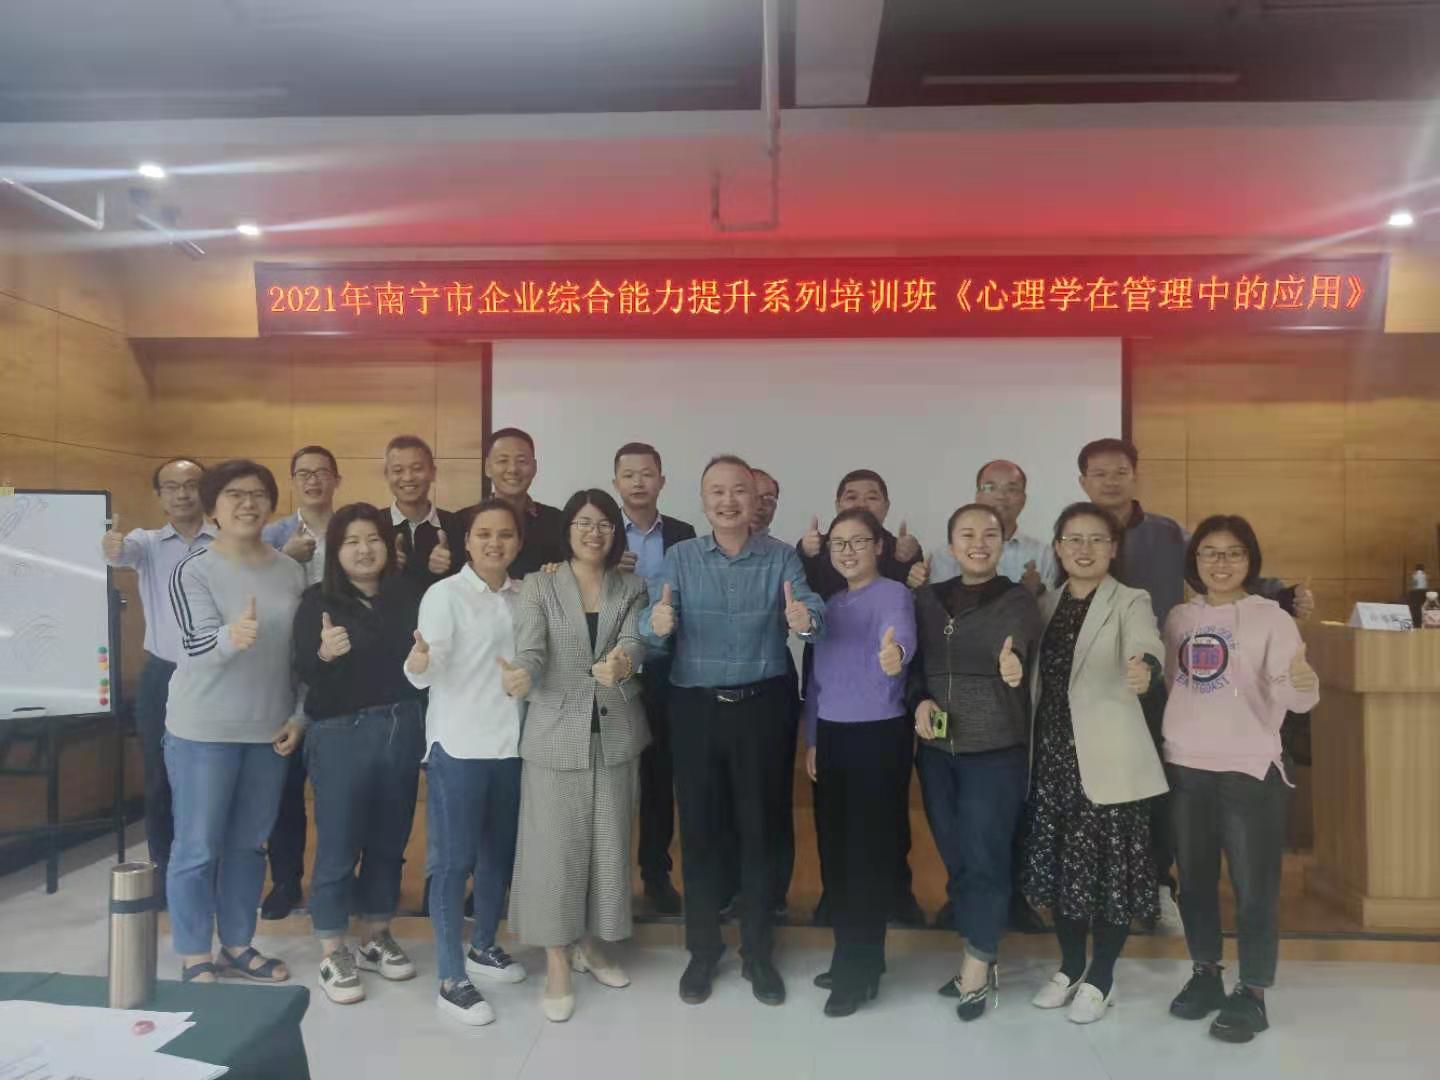 4月8号，许延颖老师在南宁开了一场公开课，主题是《心理学在管理中的应用》